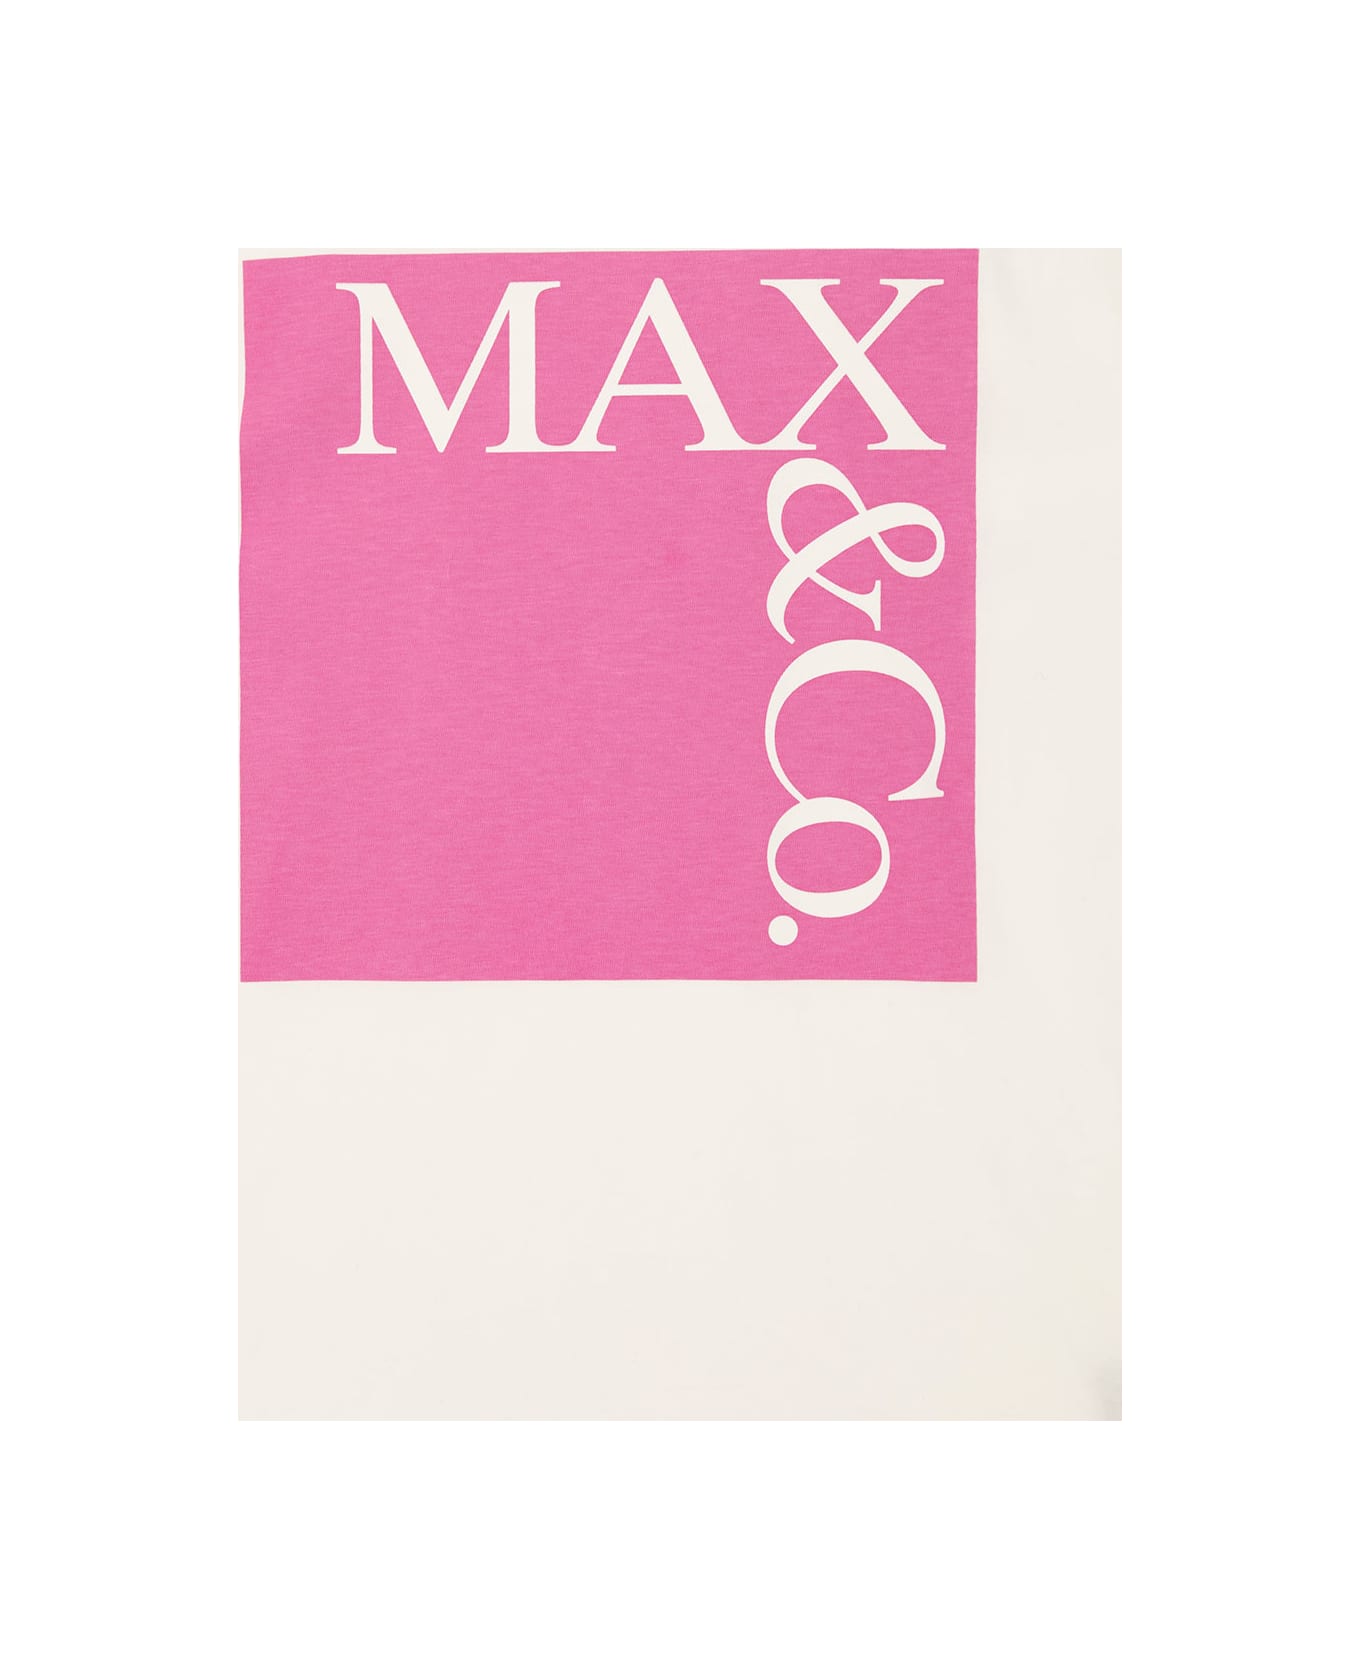 Max&Co. Mx0005mx014maxt1fmx10a - Multicolor